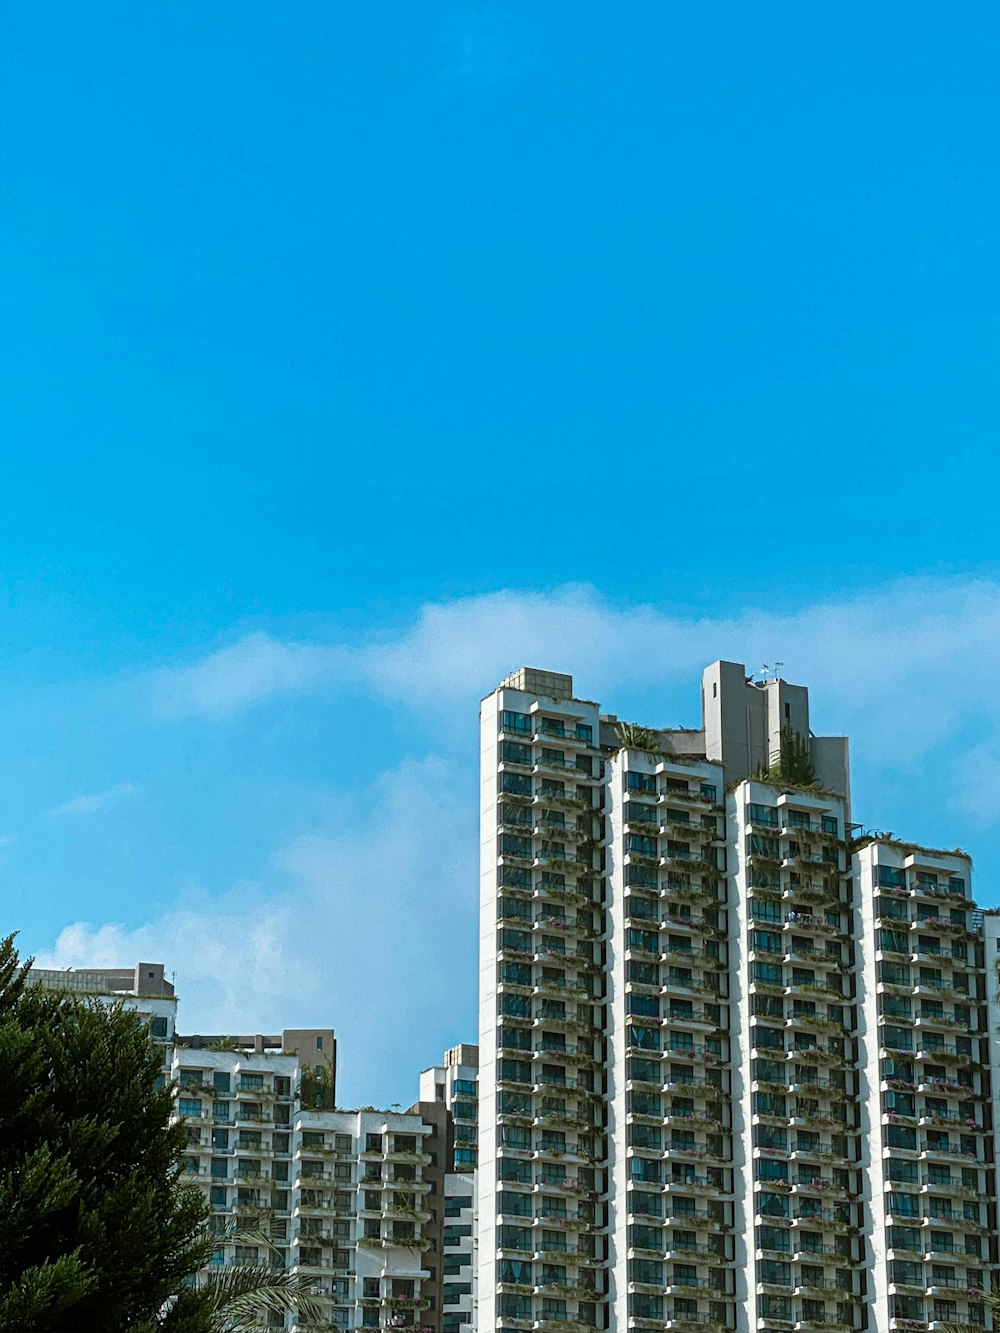 Edificios de la ciudad bajo el cielo azul durante el día